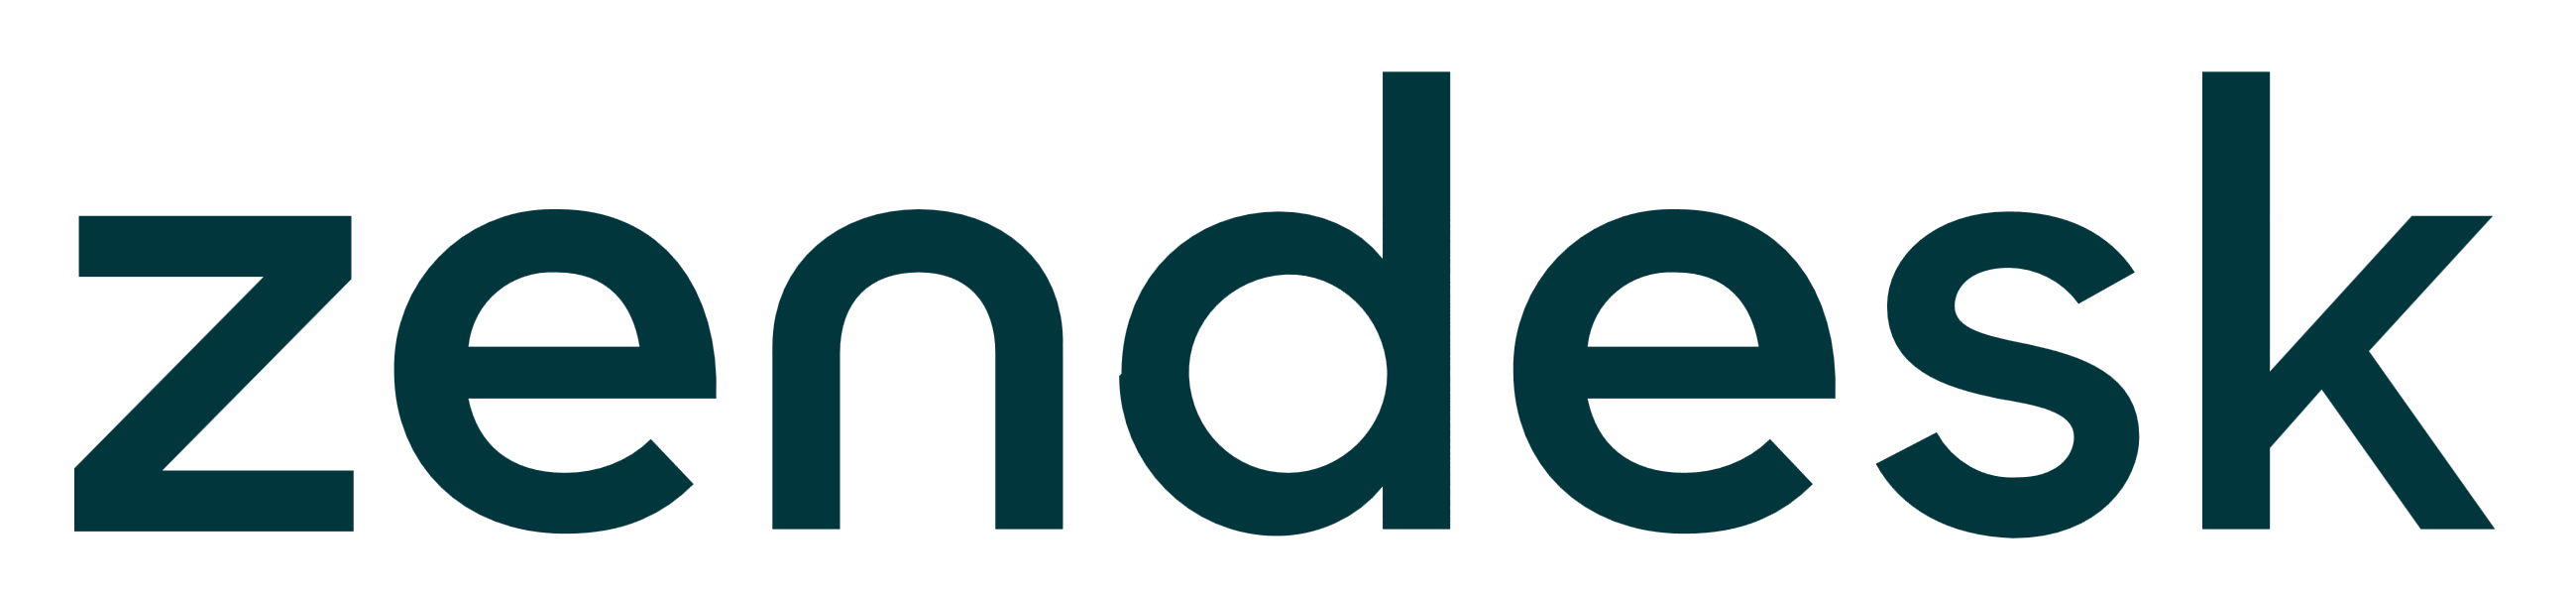 Zendesk Logo Vector PNG-PlusP